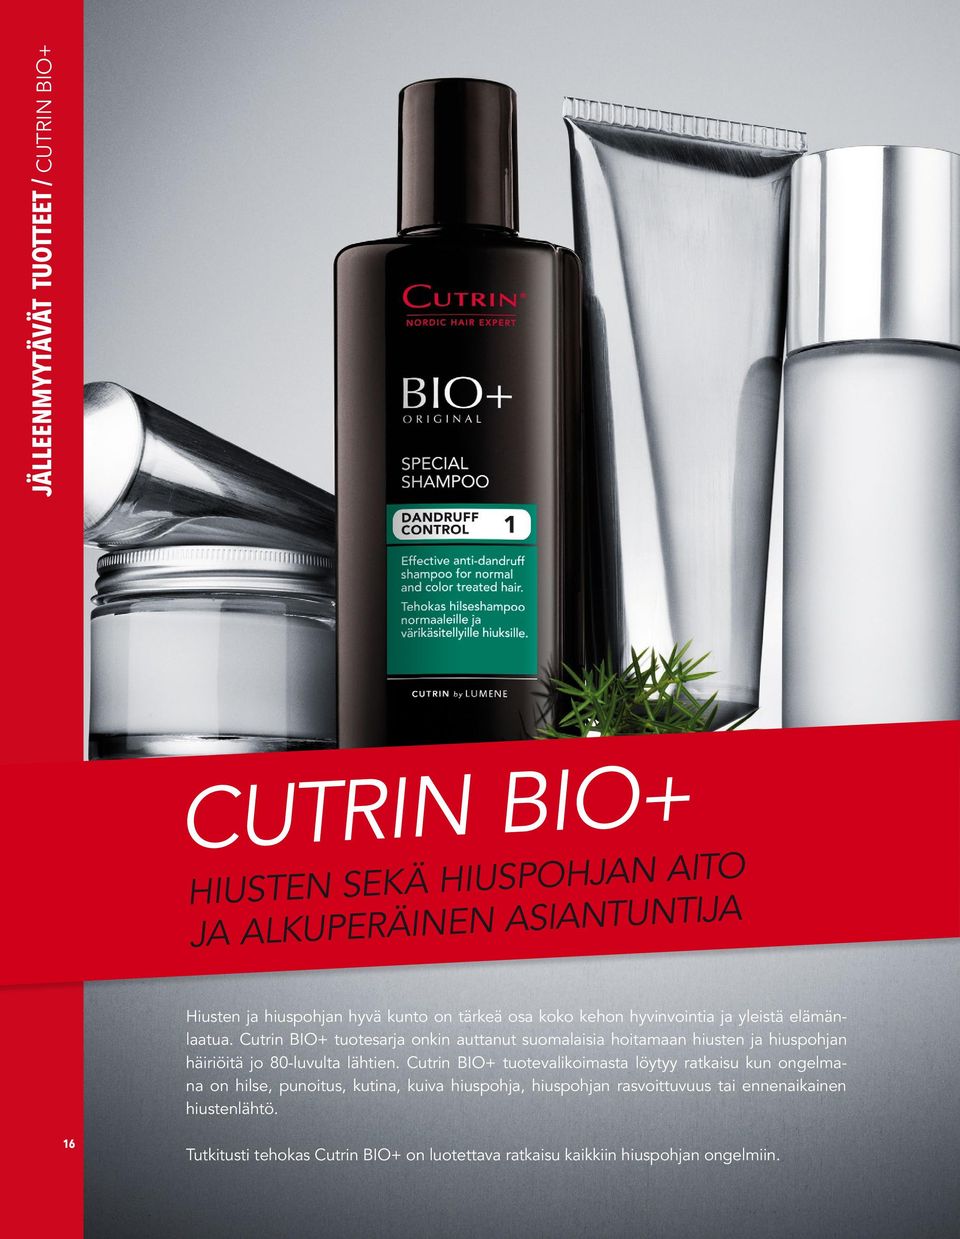 Cutrin BIO+ tuotesarja onkin auttanut suomalaisia hoitamaan hiusten ja hiuspohjan häiriöitä jo 80-luvulta lähtien.